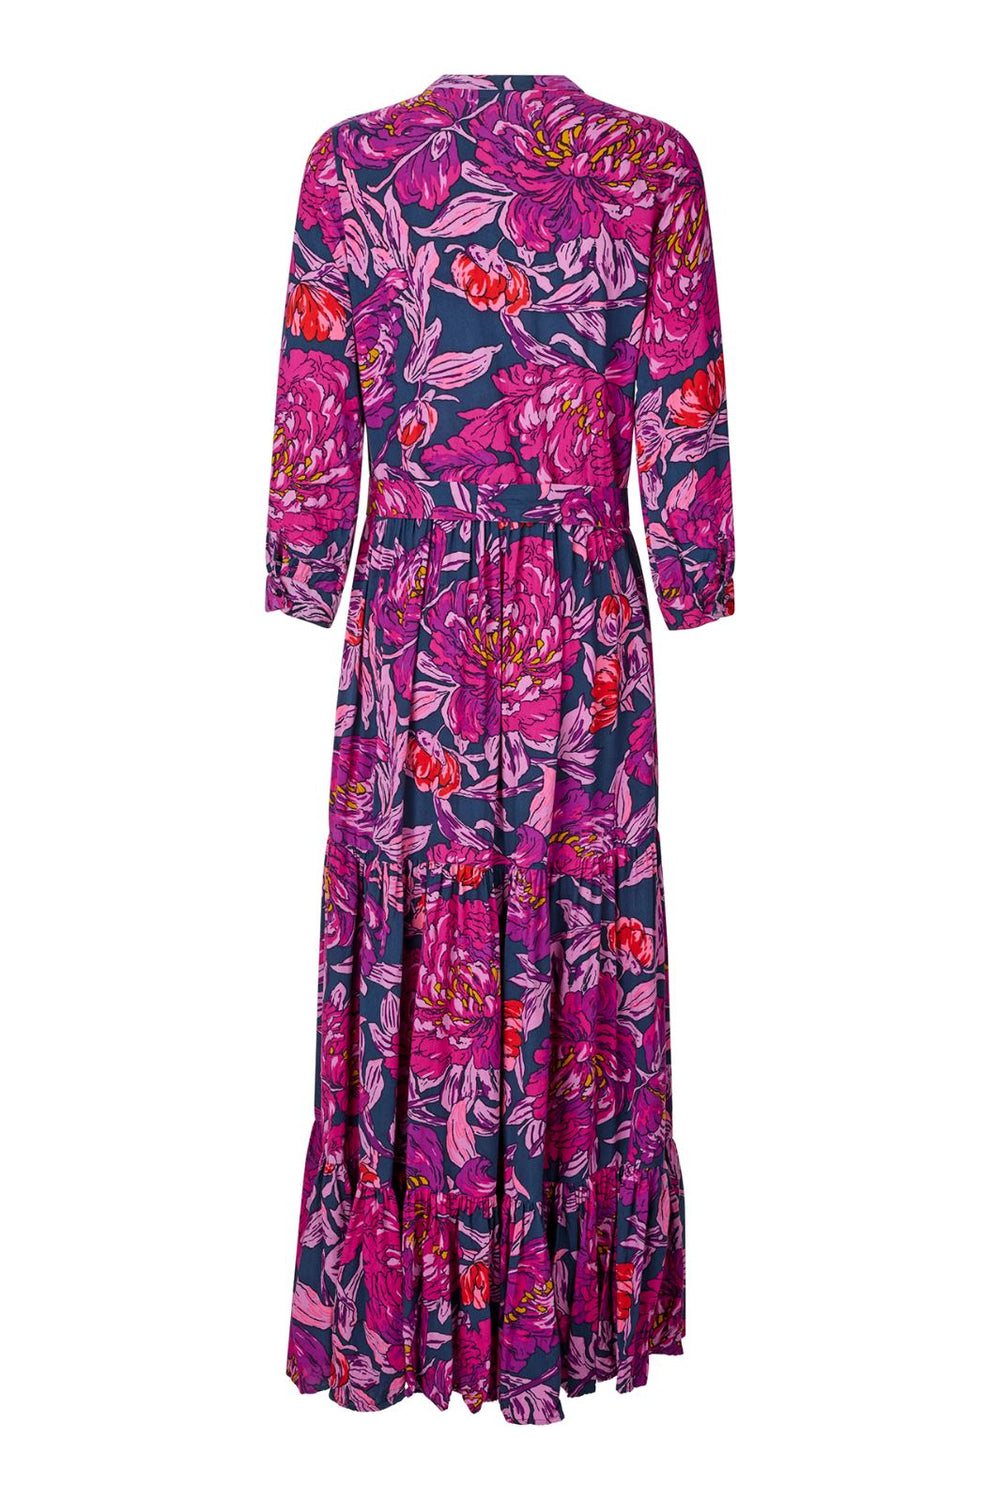 Lollys Laundry - Nee Dress - 50 Dark Lavender Kjoler 